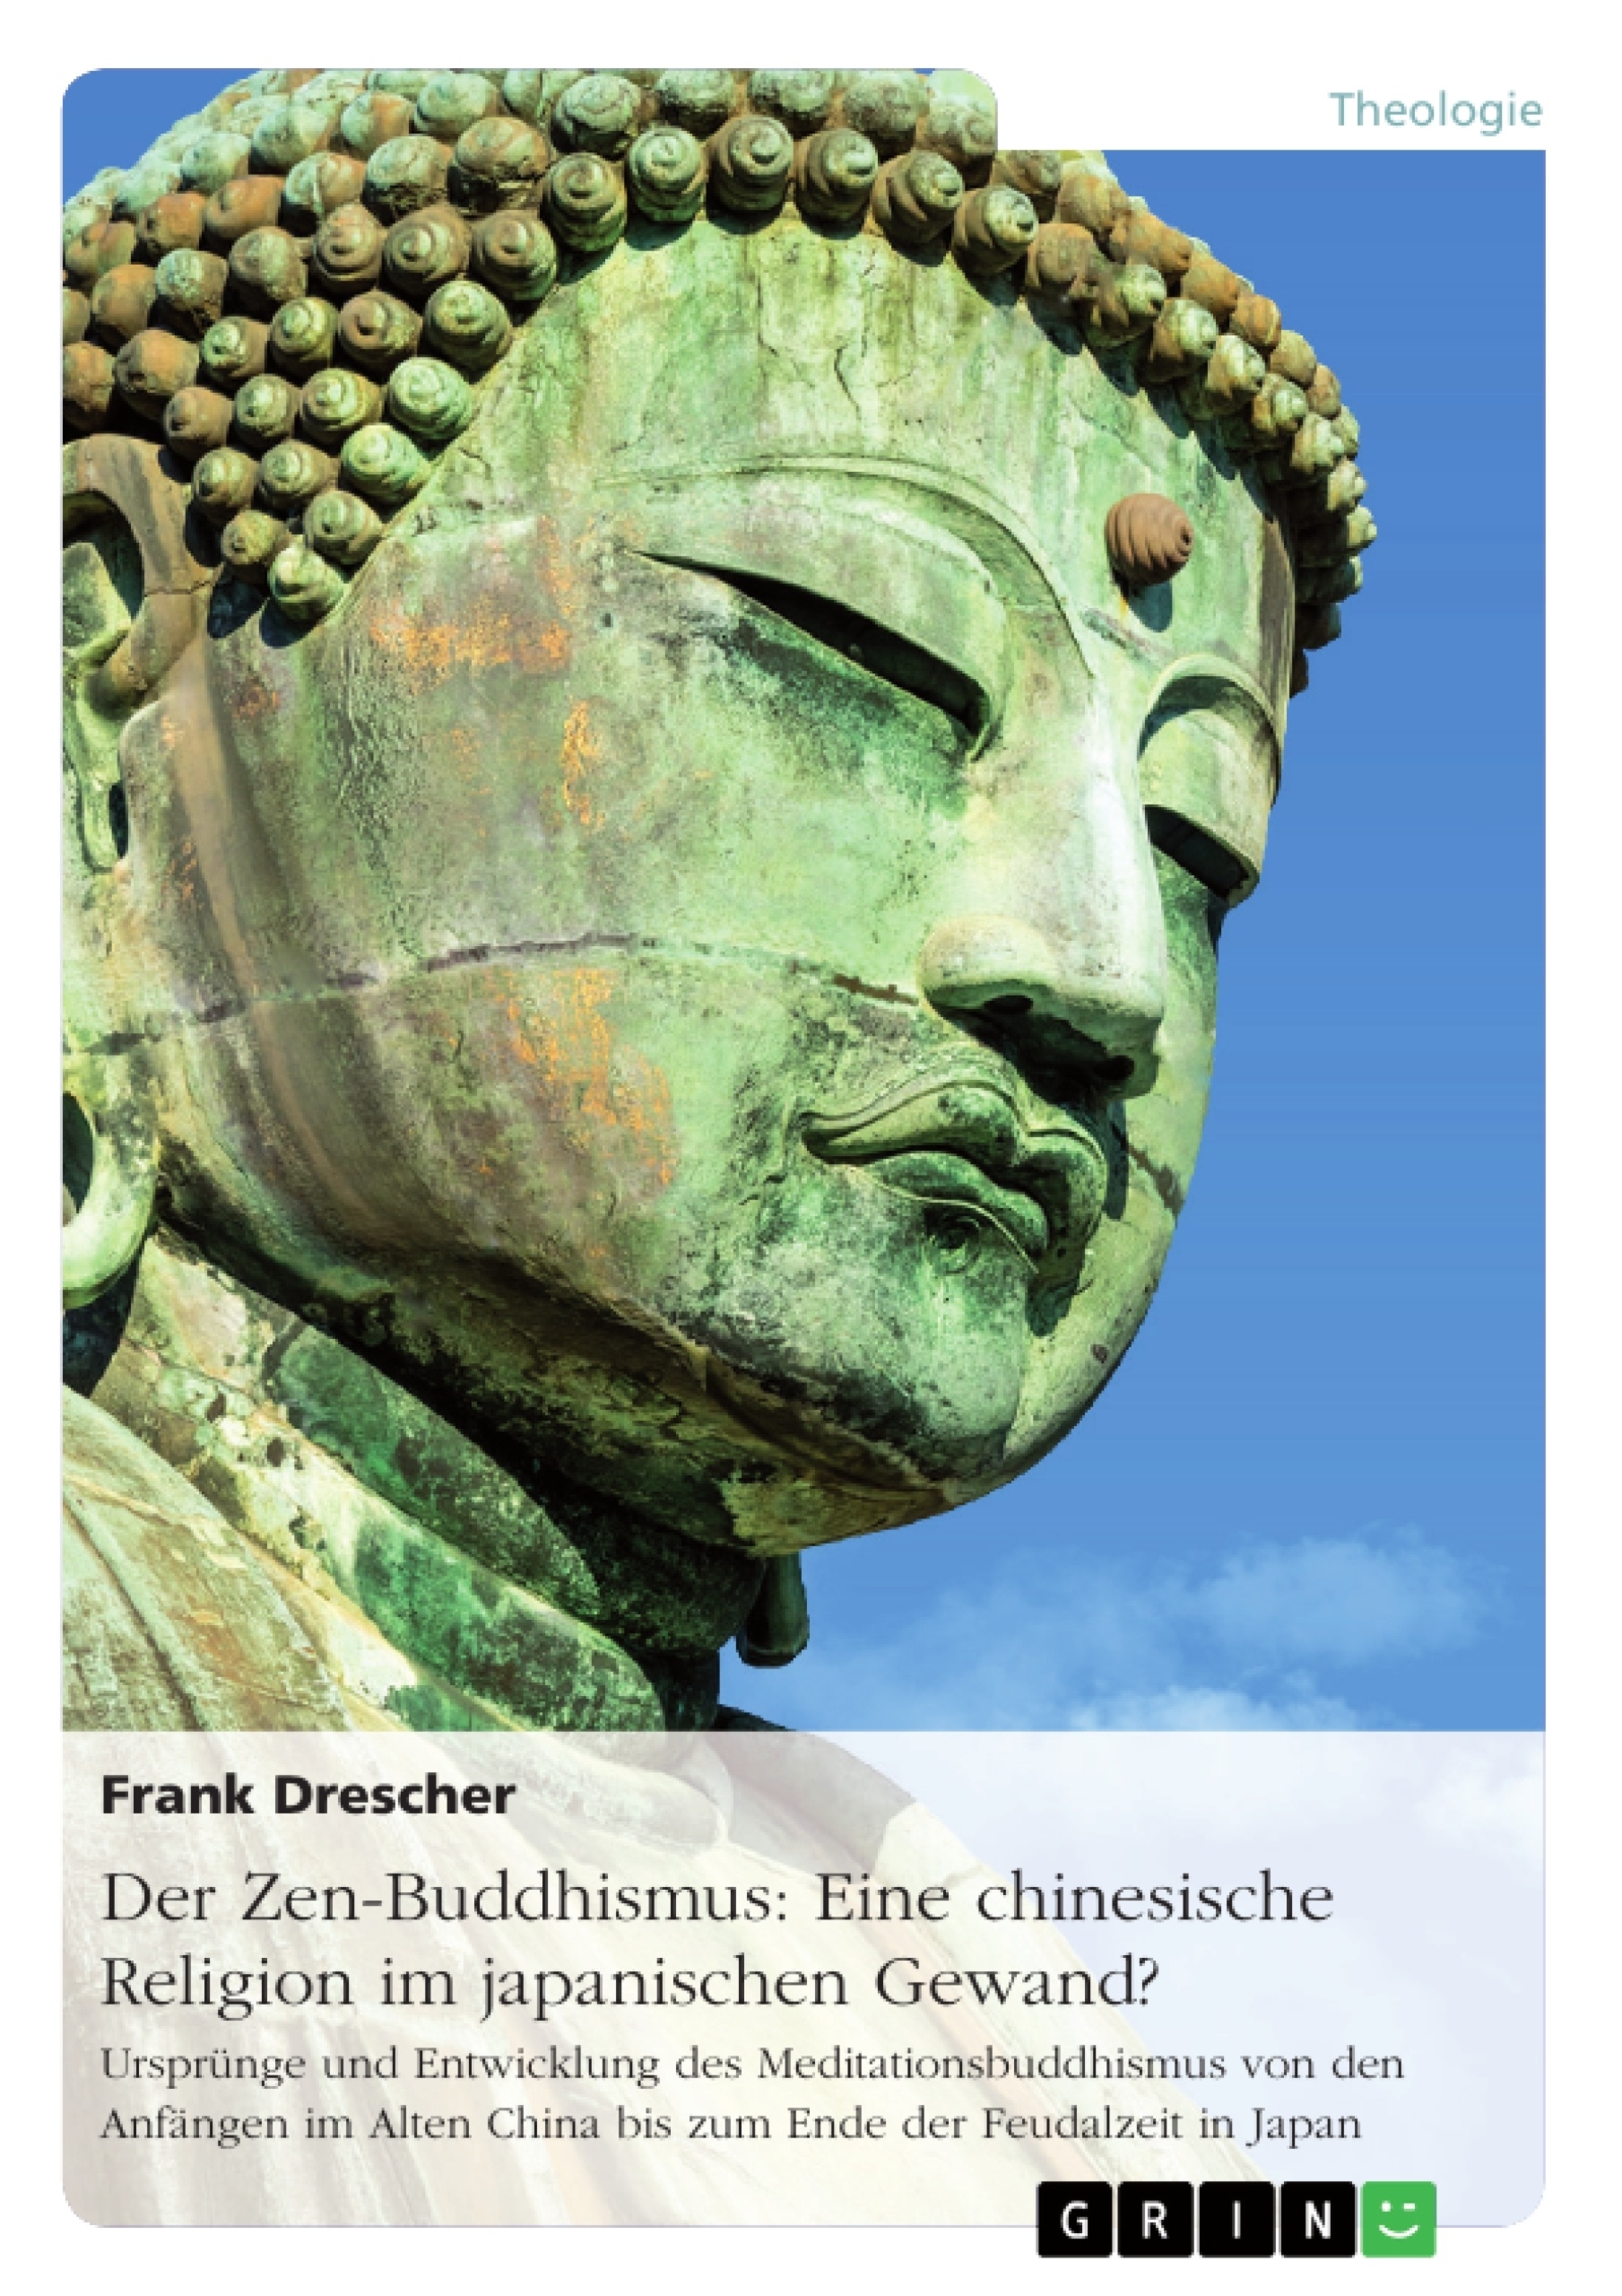 Título: Der Zen-Buddhismus: Eine chinesische Religion im japanischen Gewand?